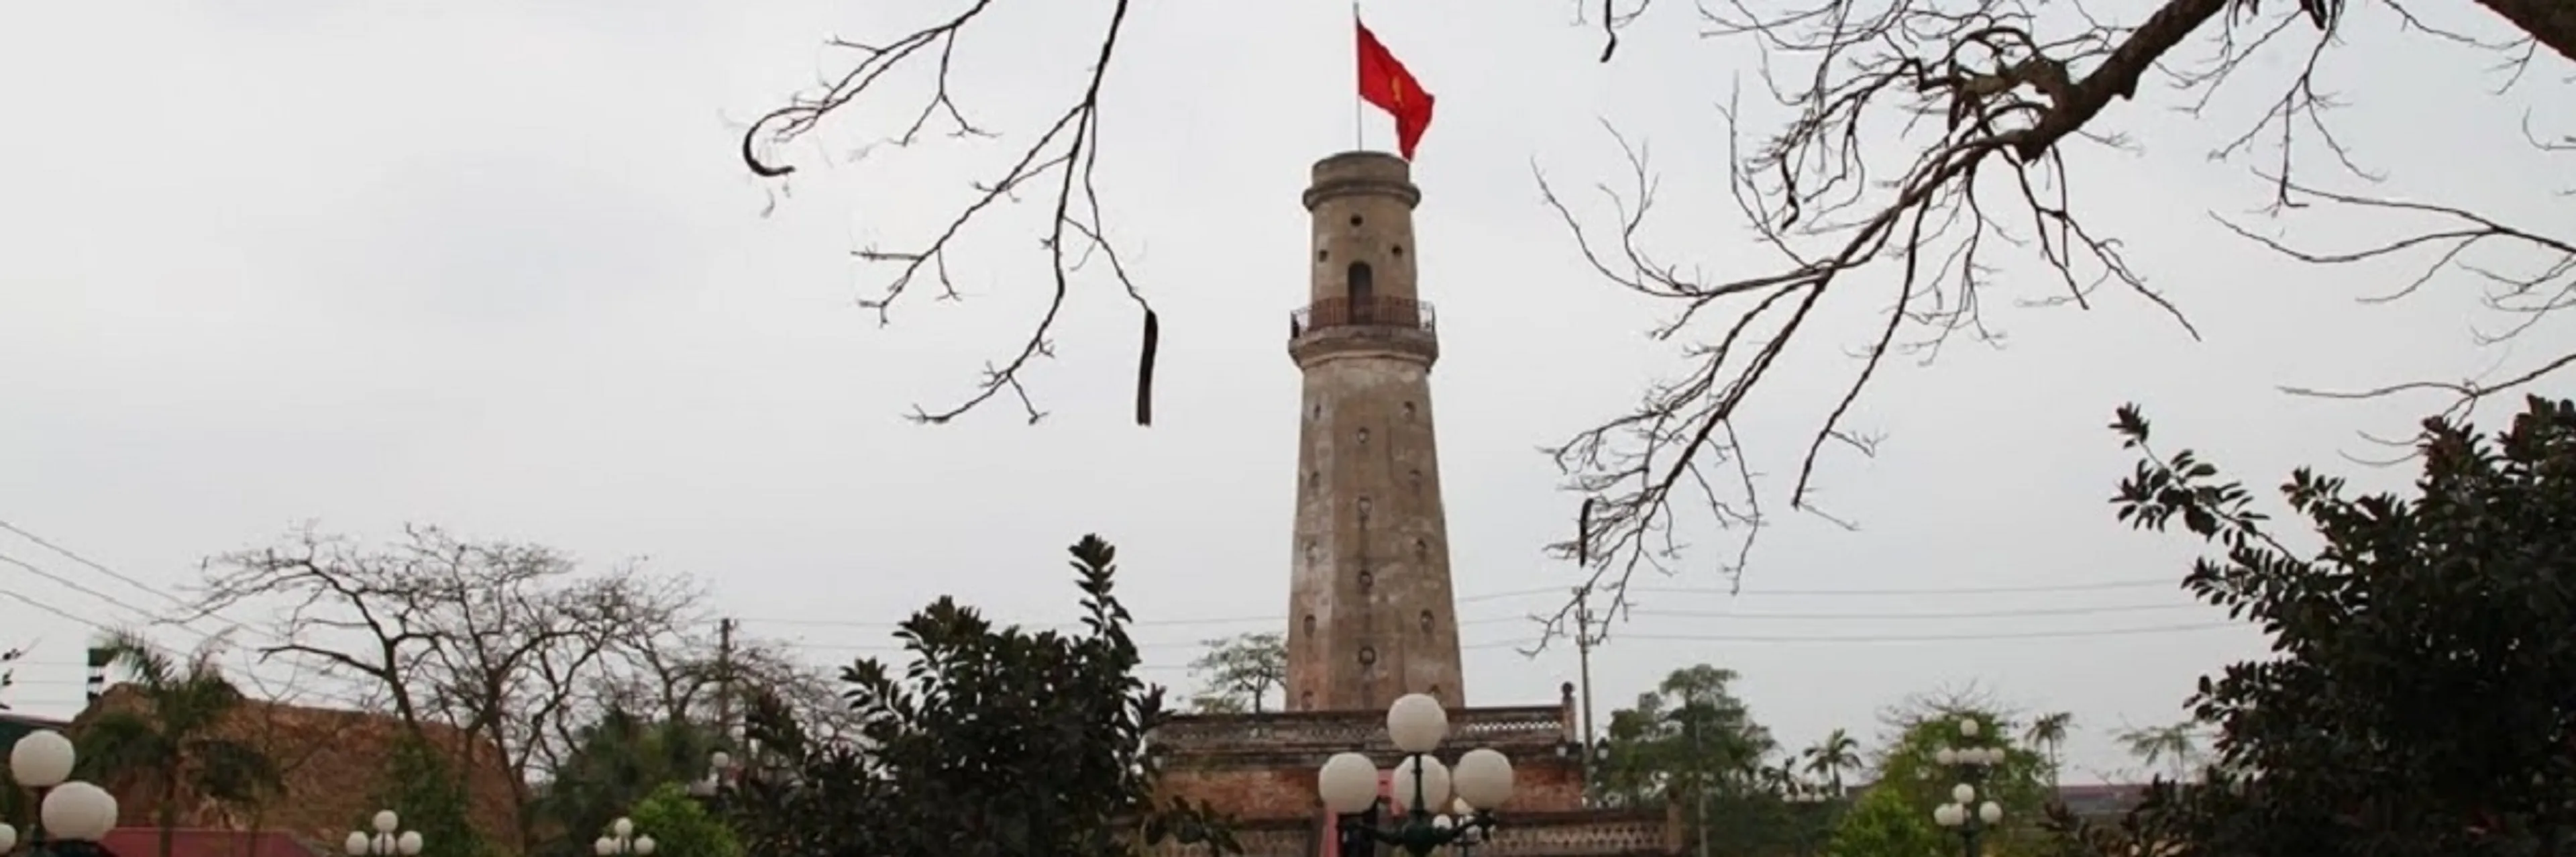 Tham quan cột cờ Nam Định chứng nhân lịch sử quan trọng của người Thành Nam